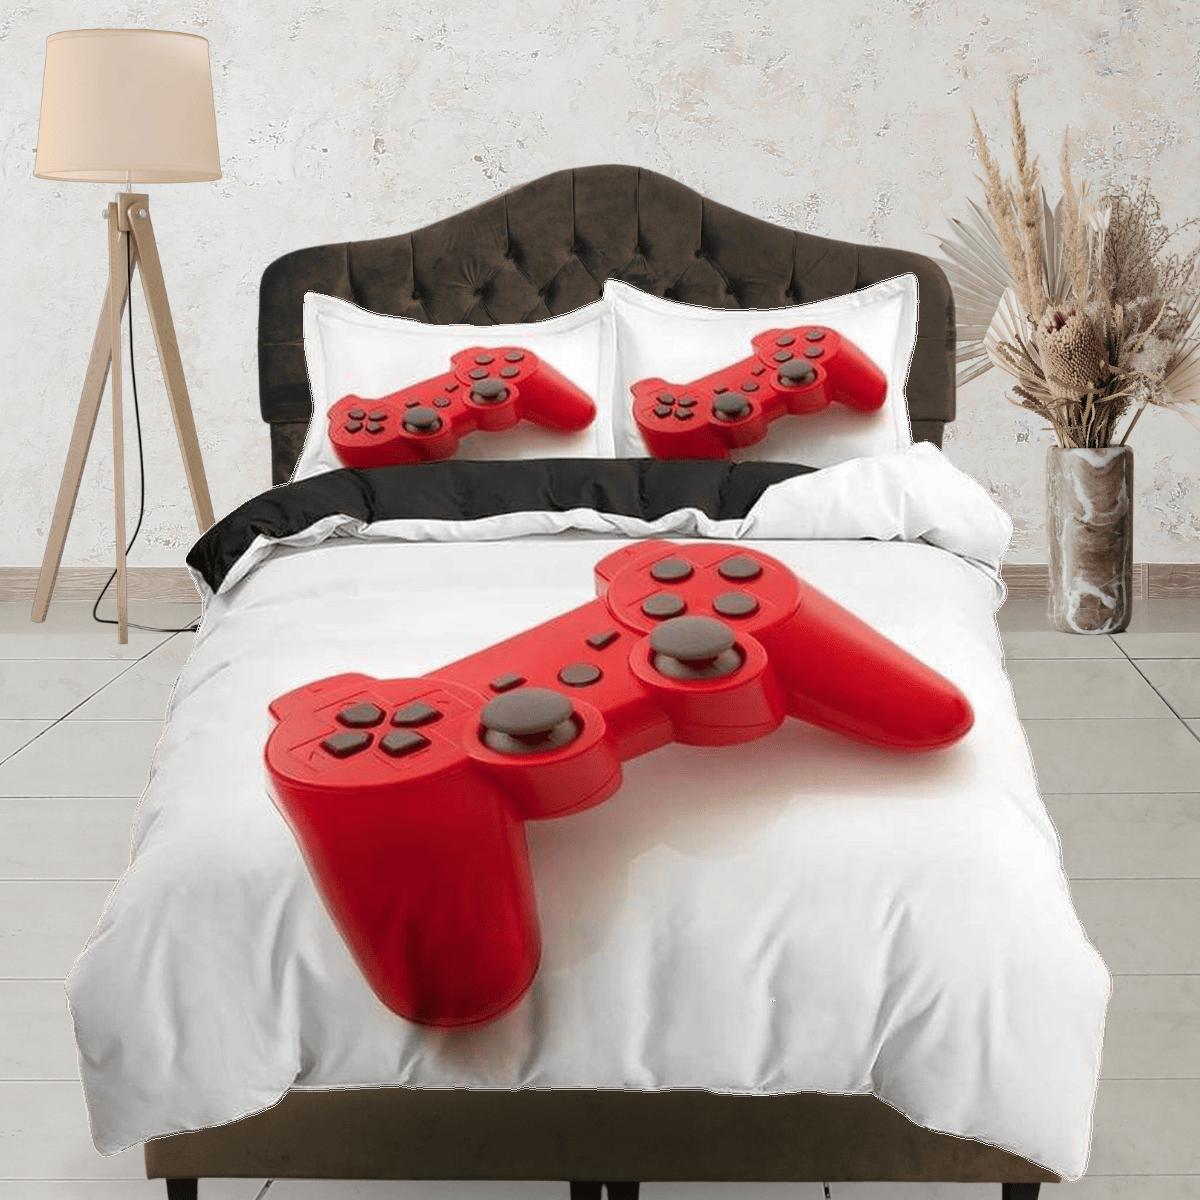 Next level gamer bedding black duvet cover, video gamer boyfriend gift